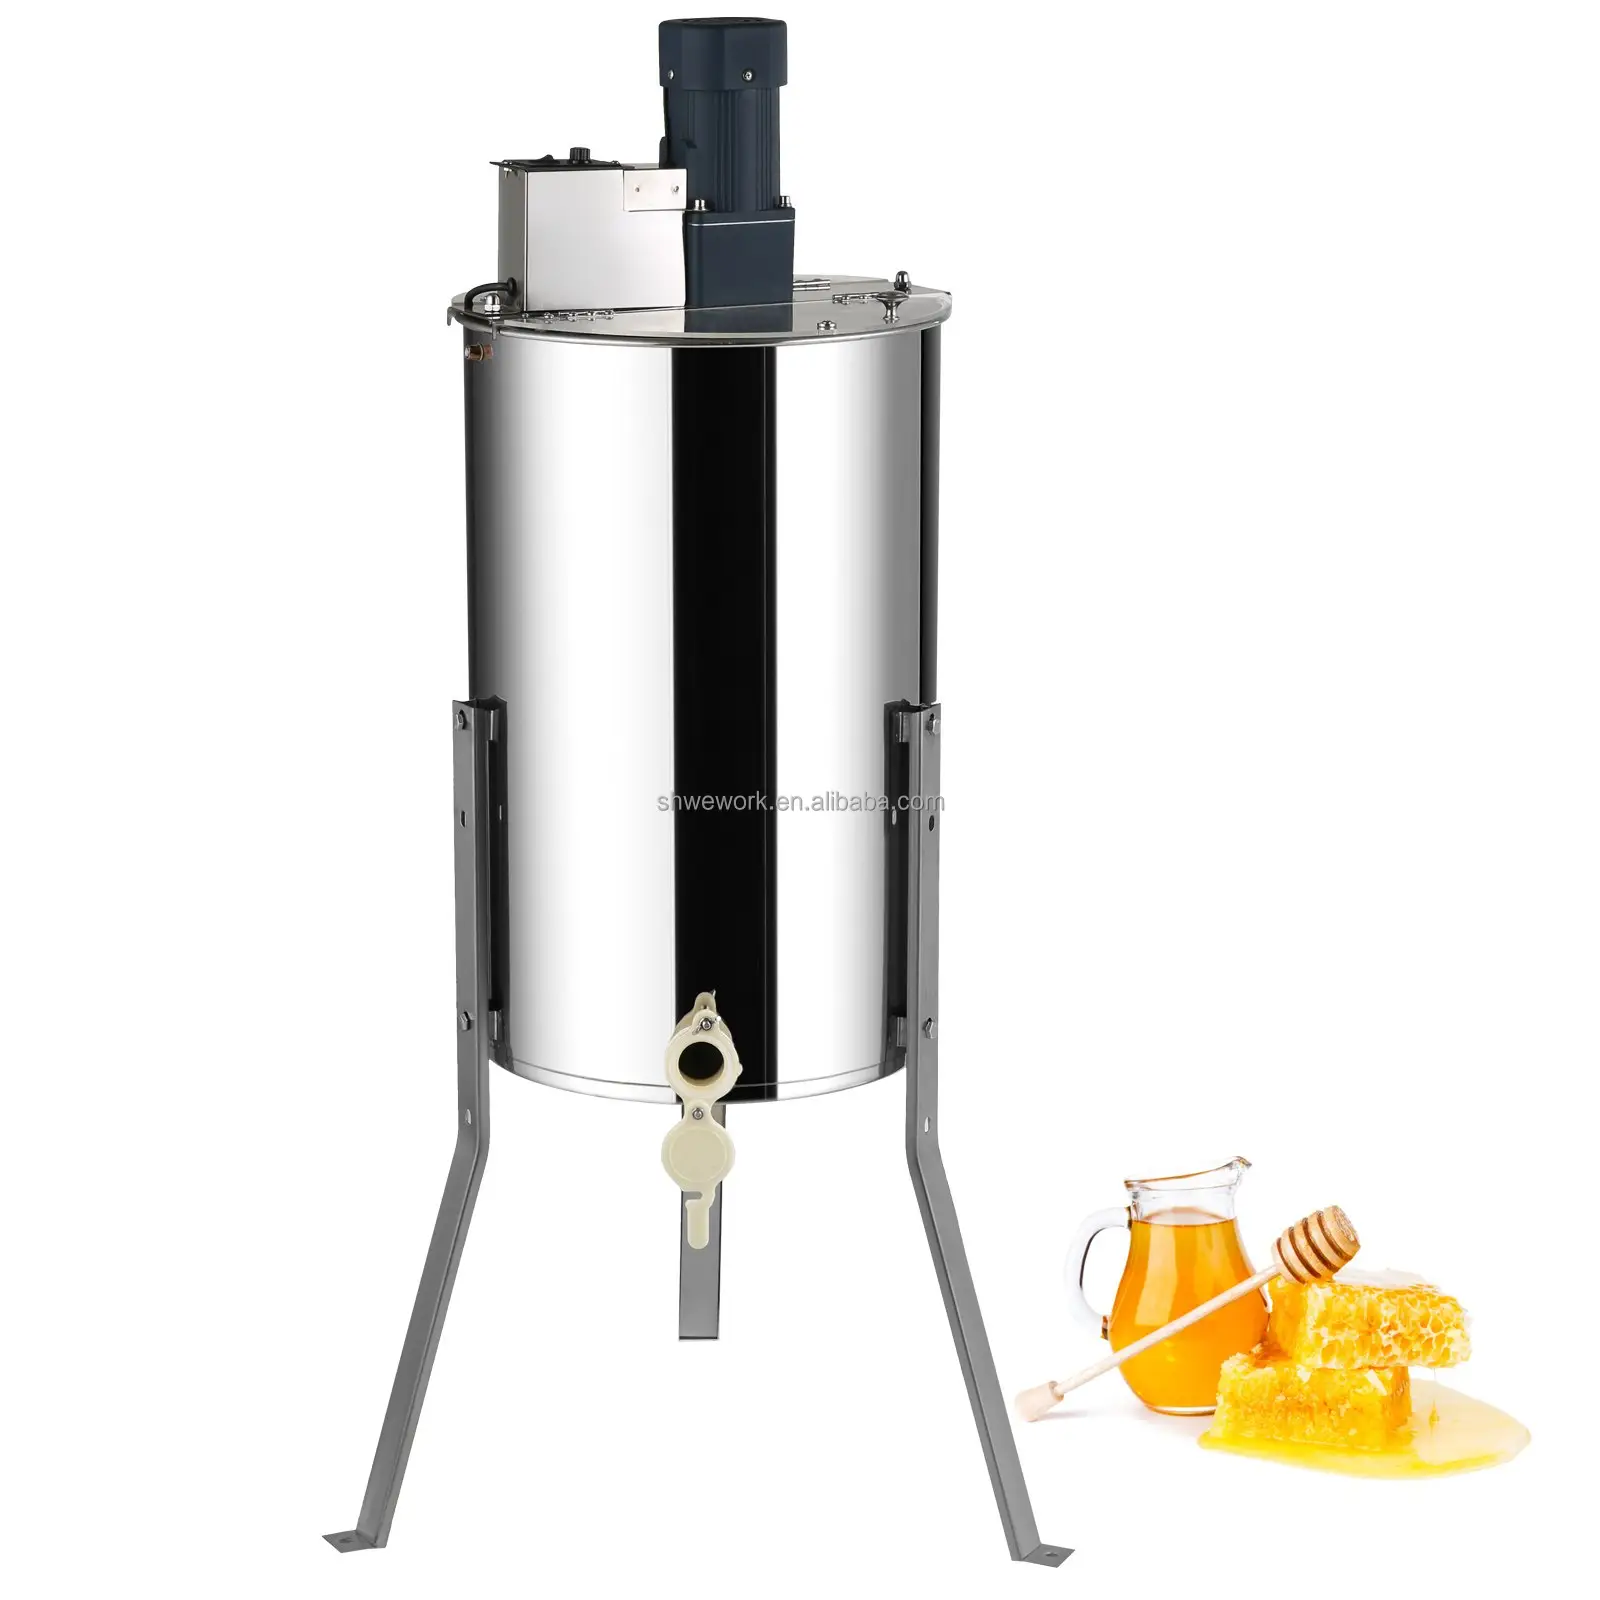 Extracteur de miel électrique 2/4 cadres extracteur de miel extracteur en acier inoxydable extraction d'apiculture équipement de centrifugeuse de rucher